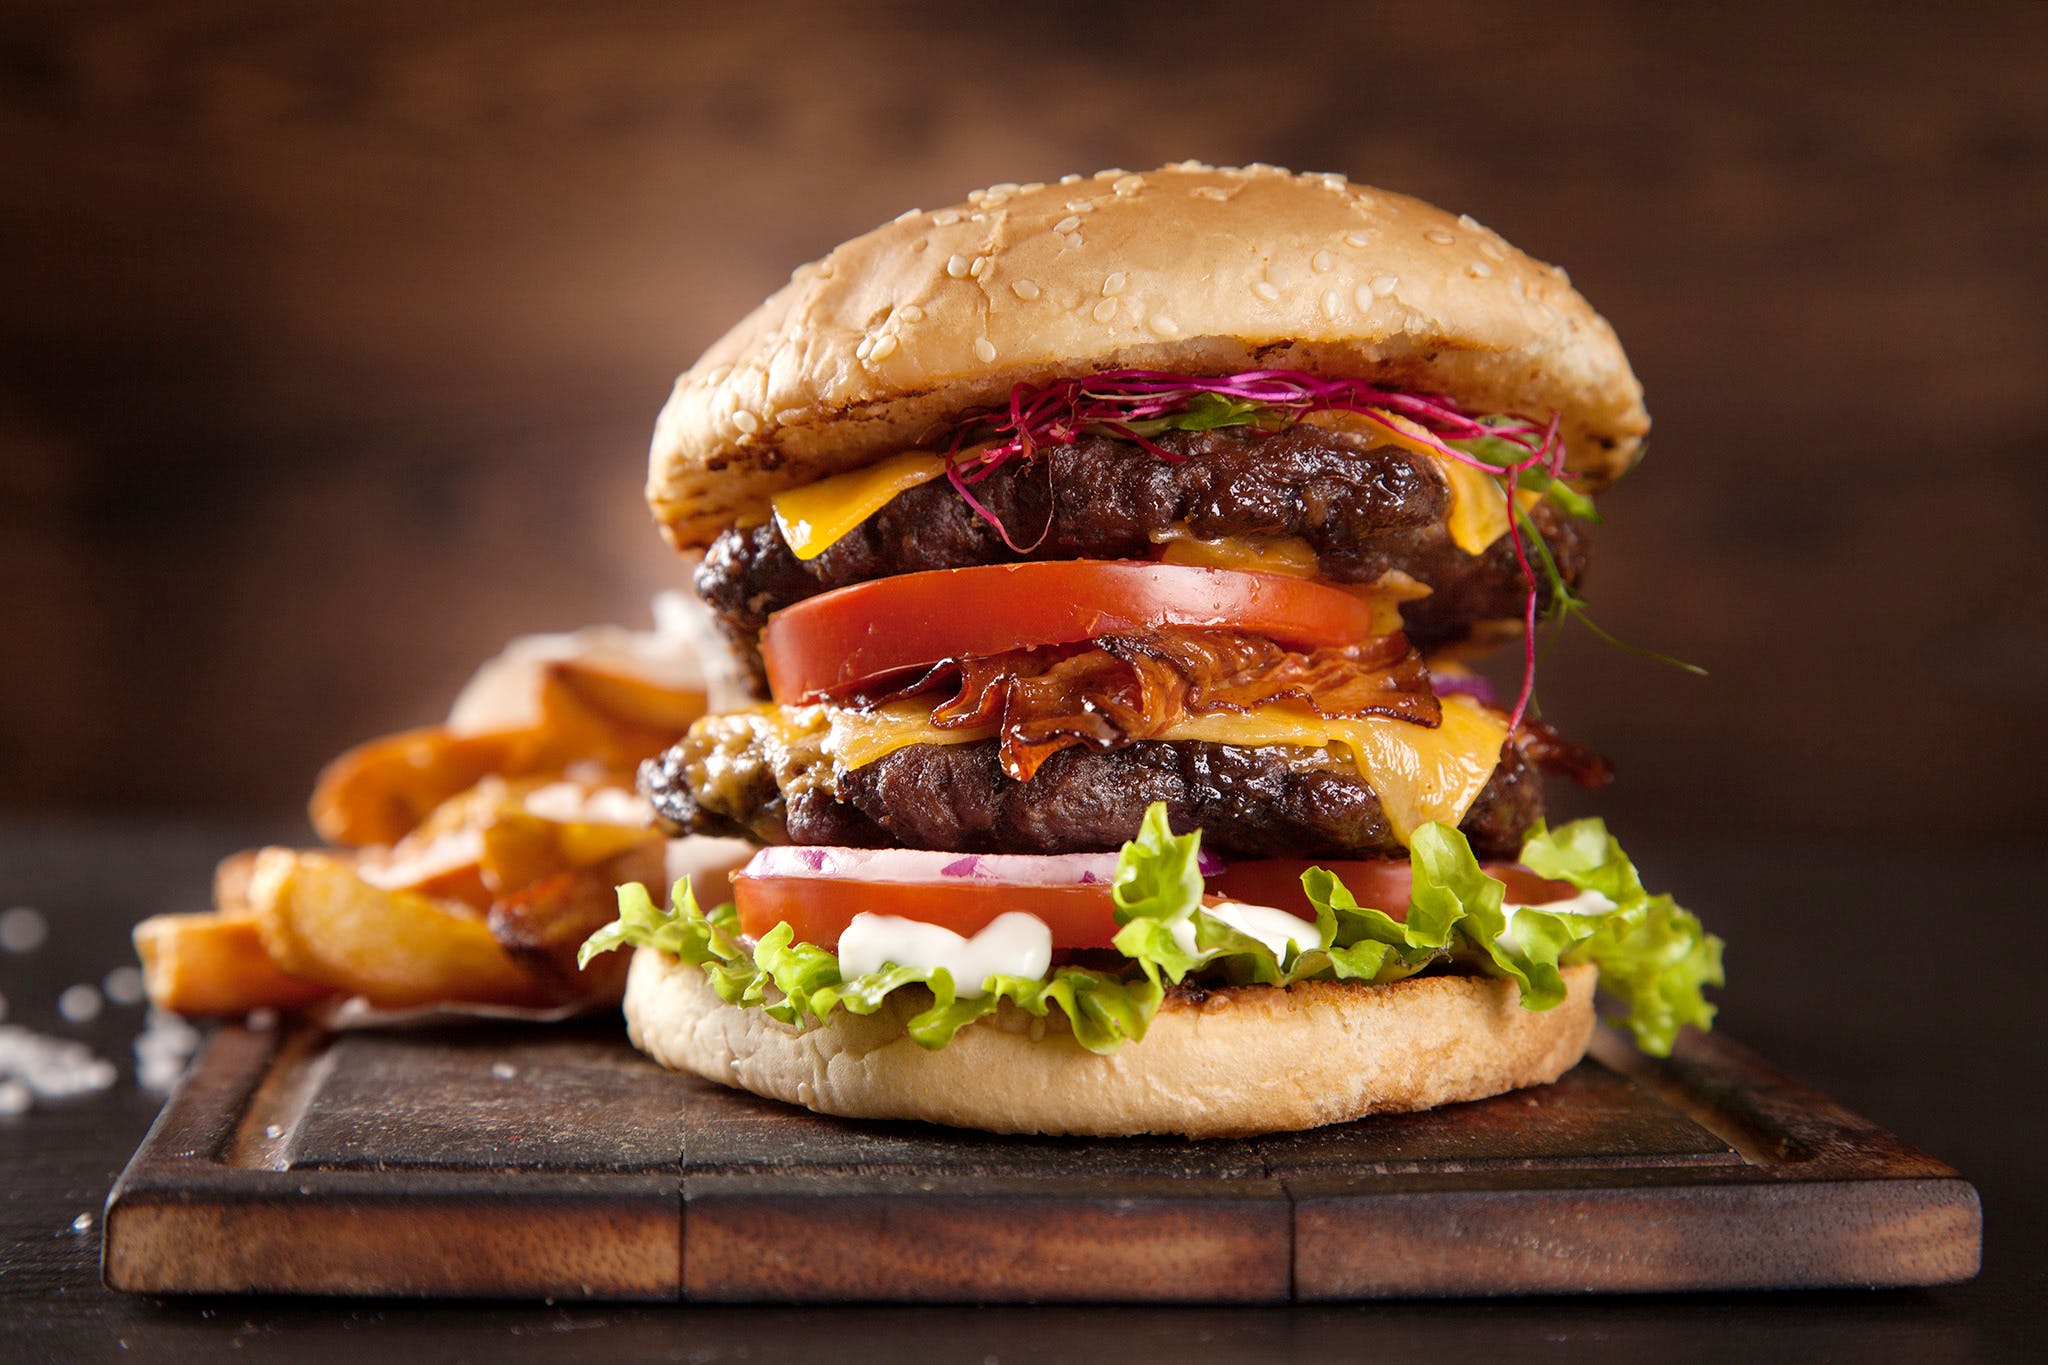 Hamburger,Food,Buffalo burger,Dish,Junk food,Veggie burger,Fast food,Cuisine,Burger king premium burgers,Cheeseburger